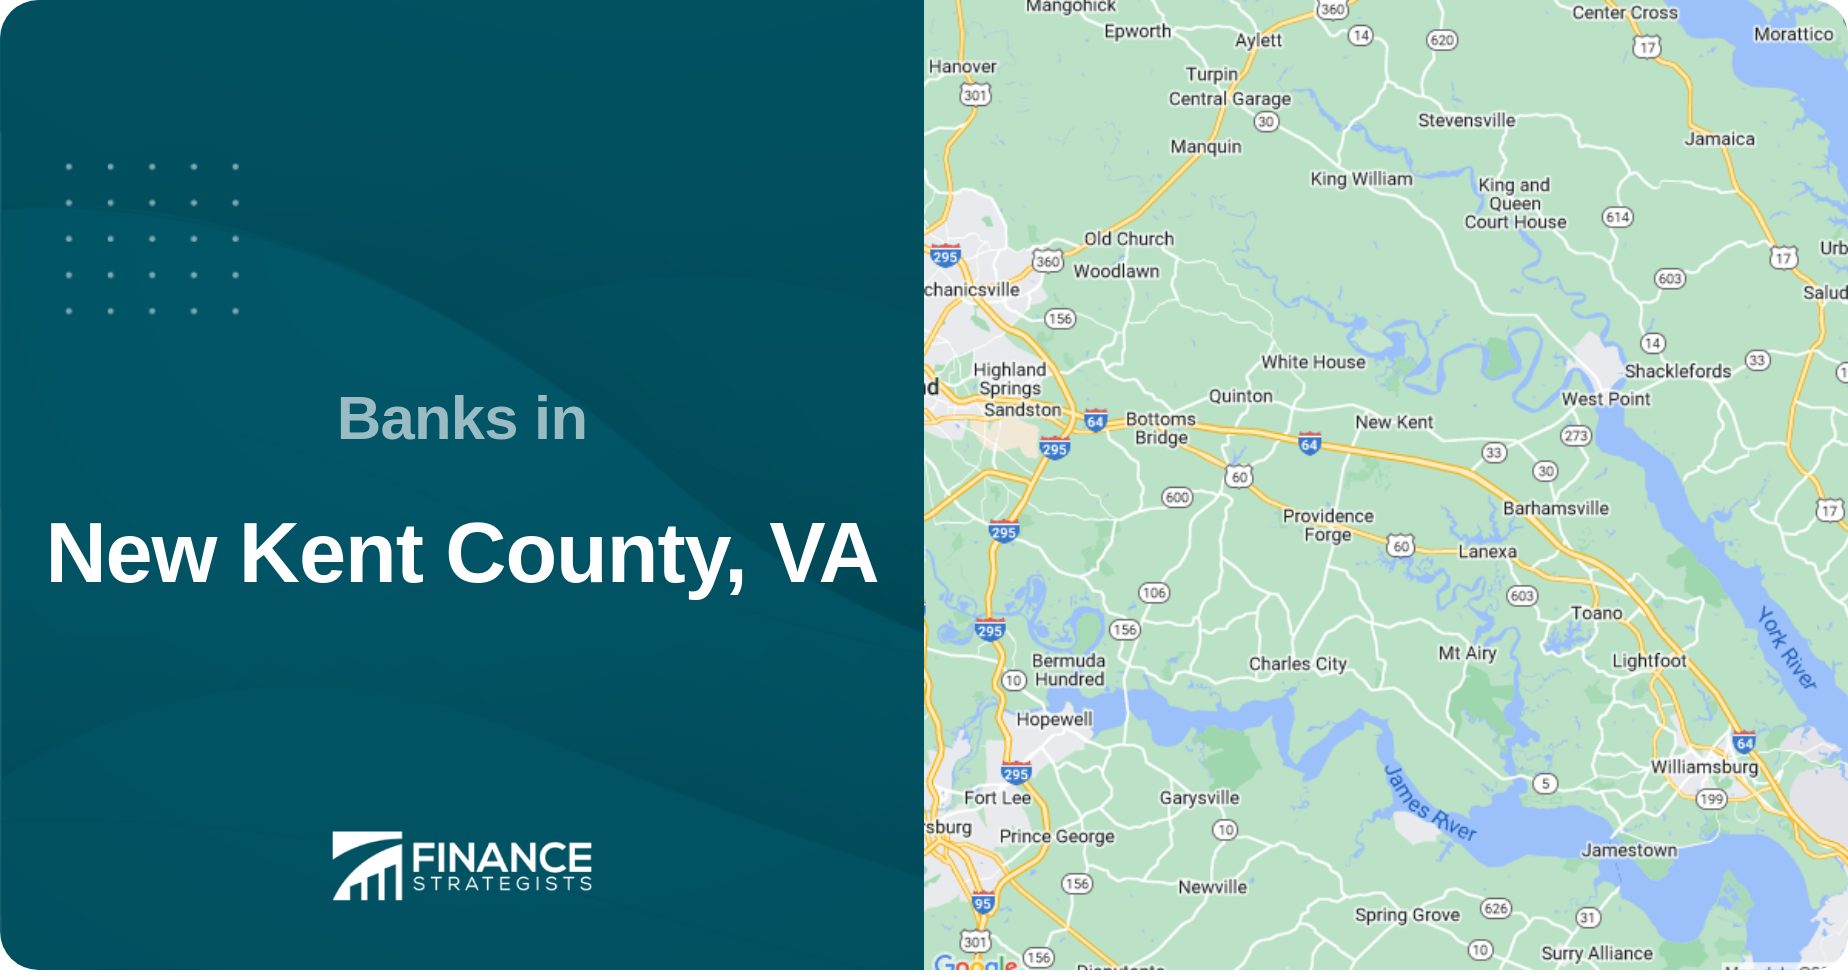 Banks in New Kent County, VA